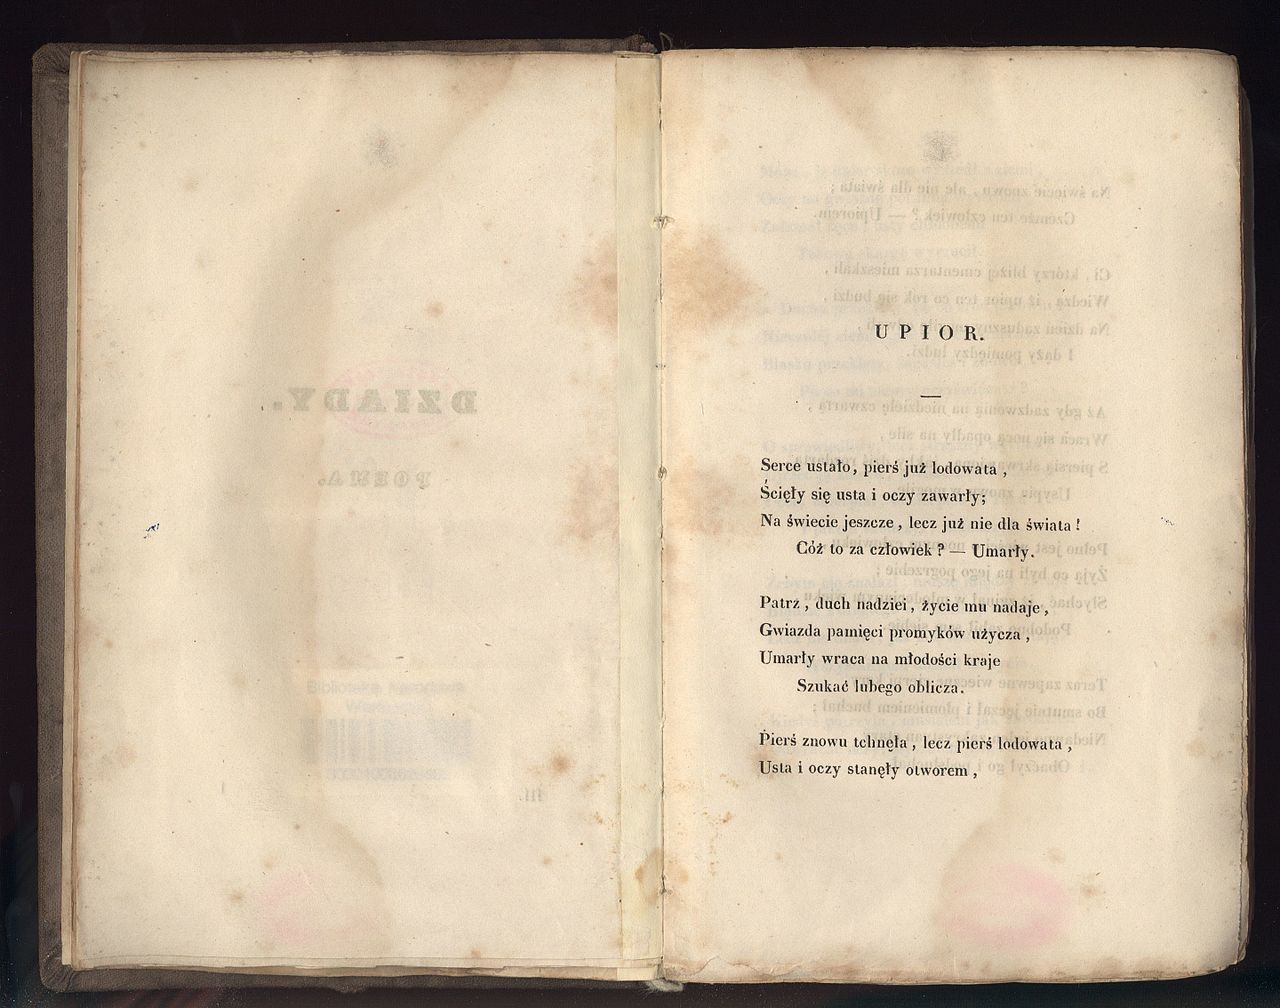 3 początkowe zwrotki utworu "Upiór" autorstwa Adama Mickiewicza, wydanie z 1829 roku